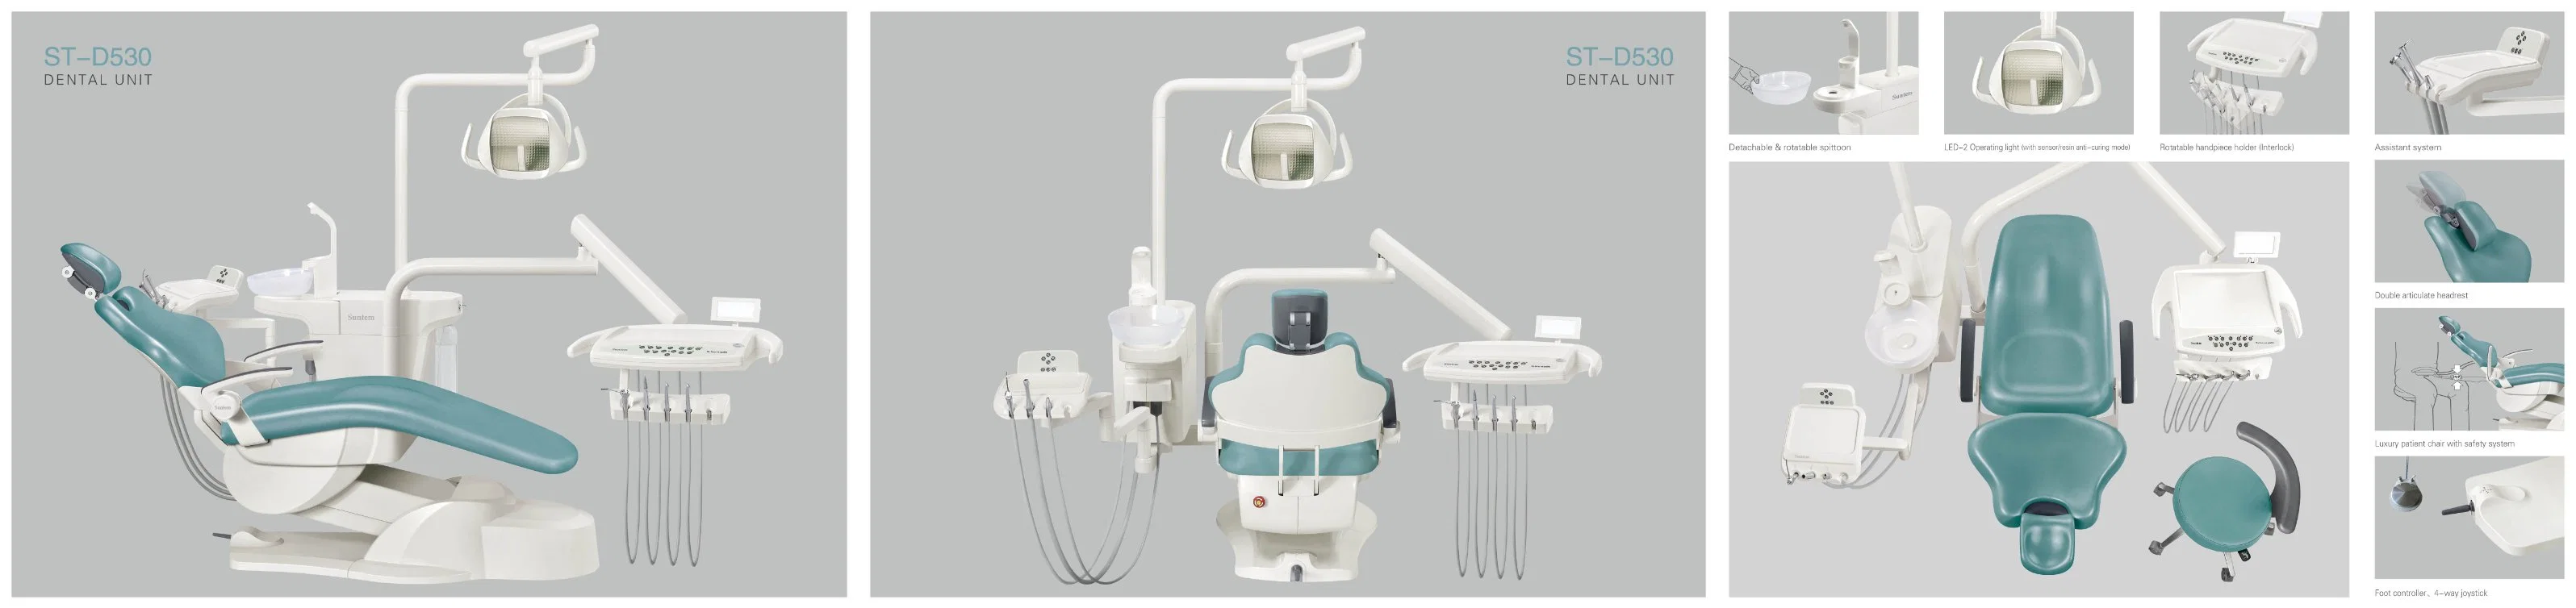 Suntem Silla de Paciente Dental / Unidad Dental / Modelo Económico con Lámpara LED / Aprobado por CE / Seguridad / Desinfección / Multicolor